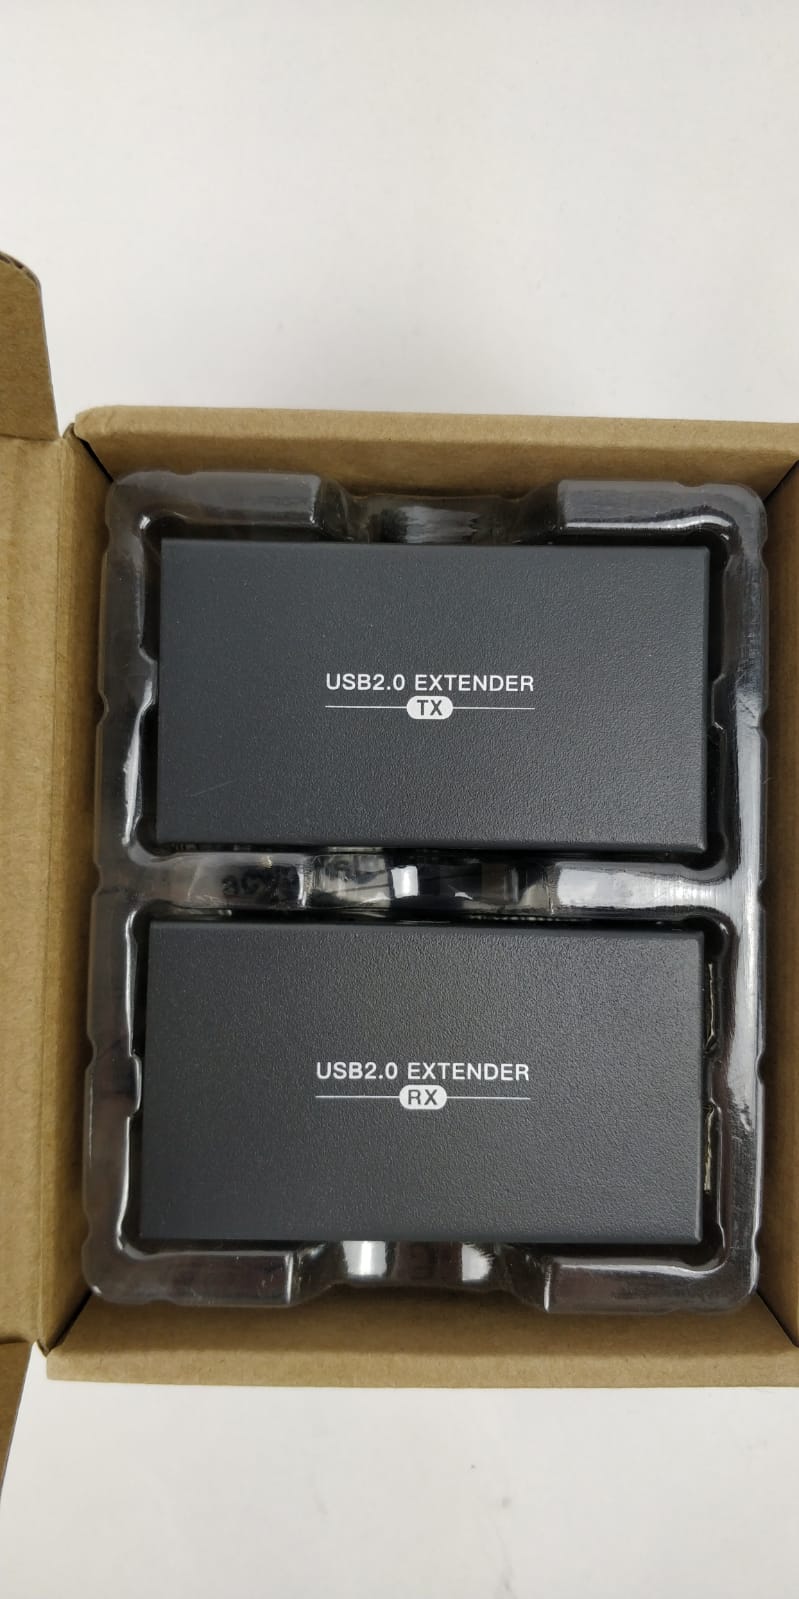   USB 2.0 Extender 